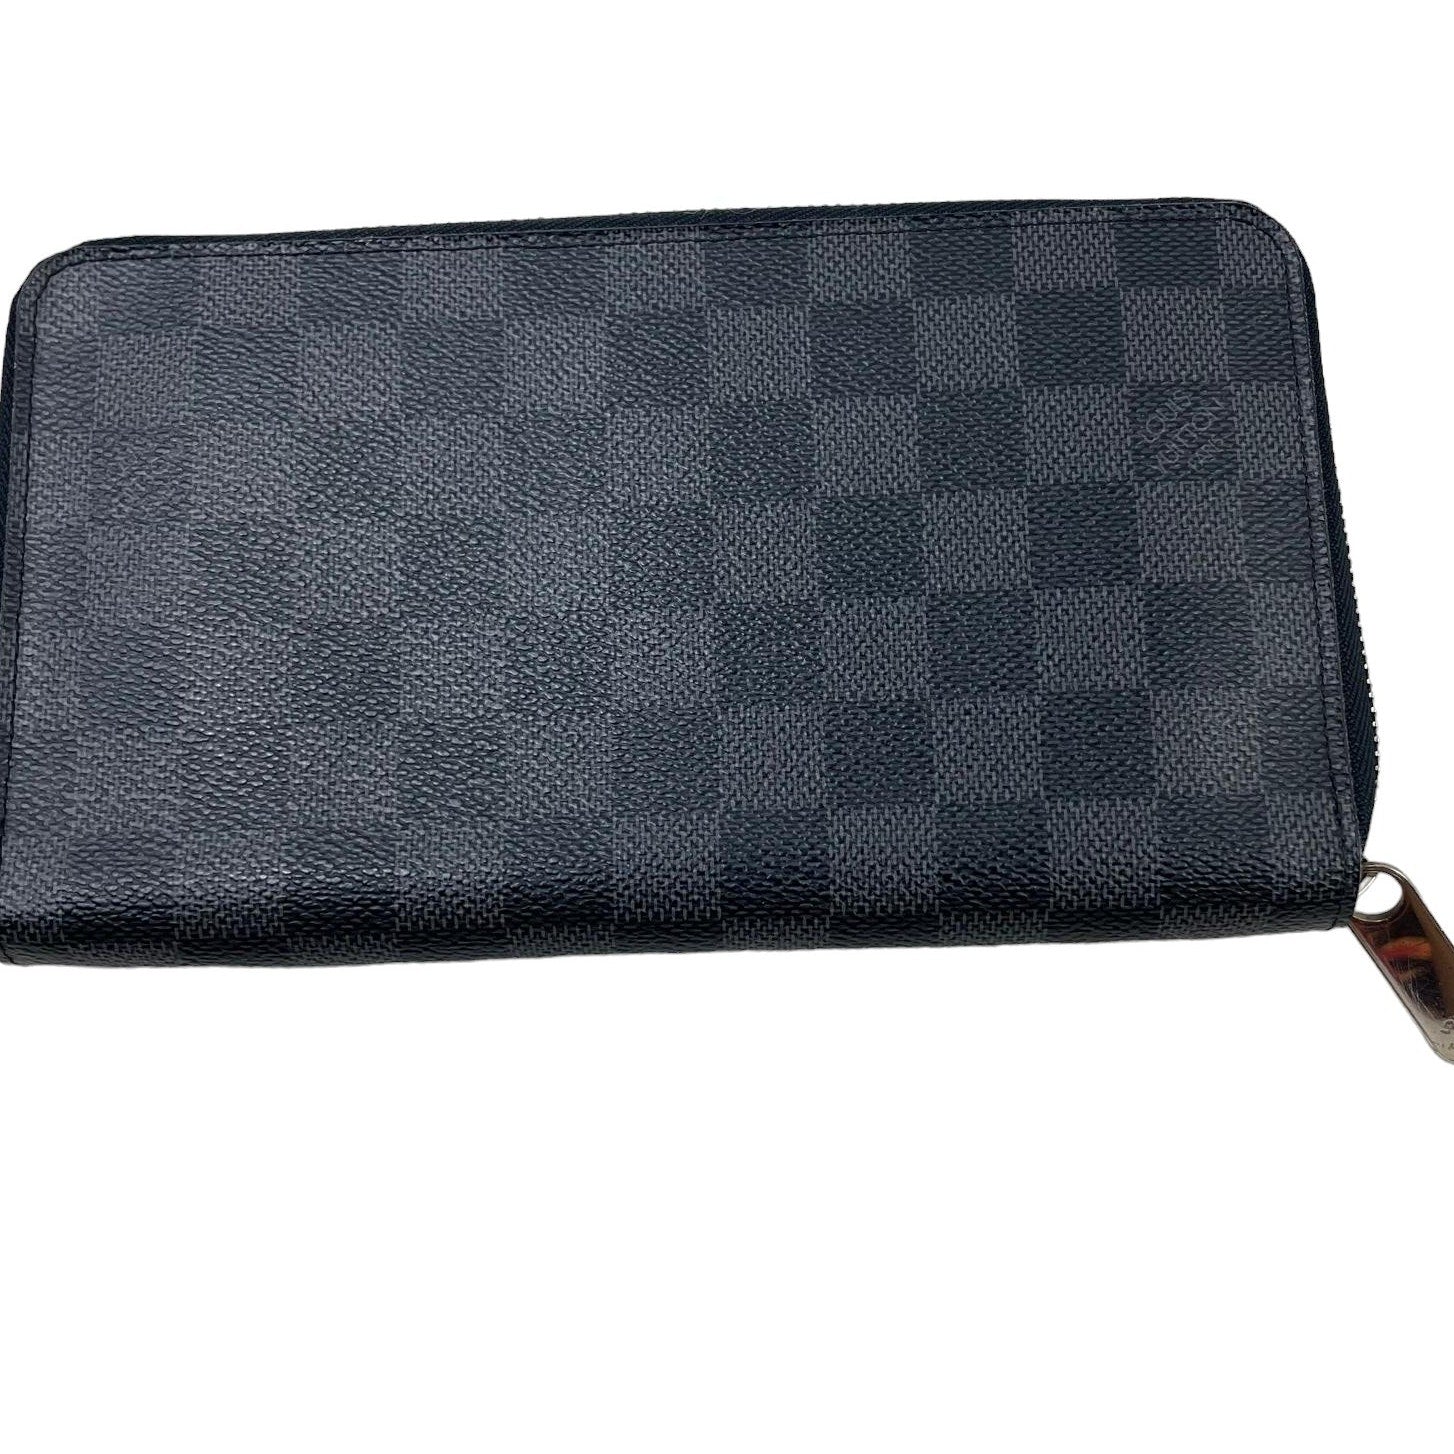 Authentic Louis Vuitton Damier Graphite Zippy Wallet